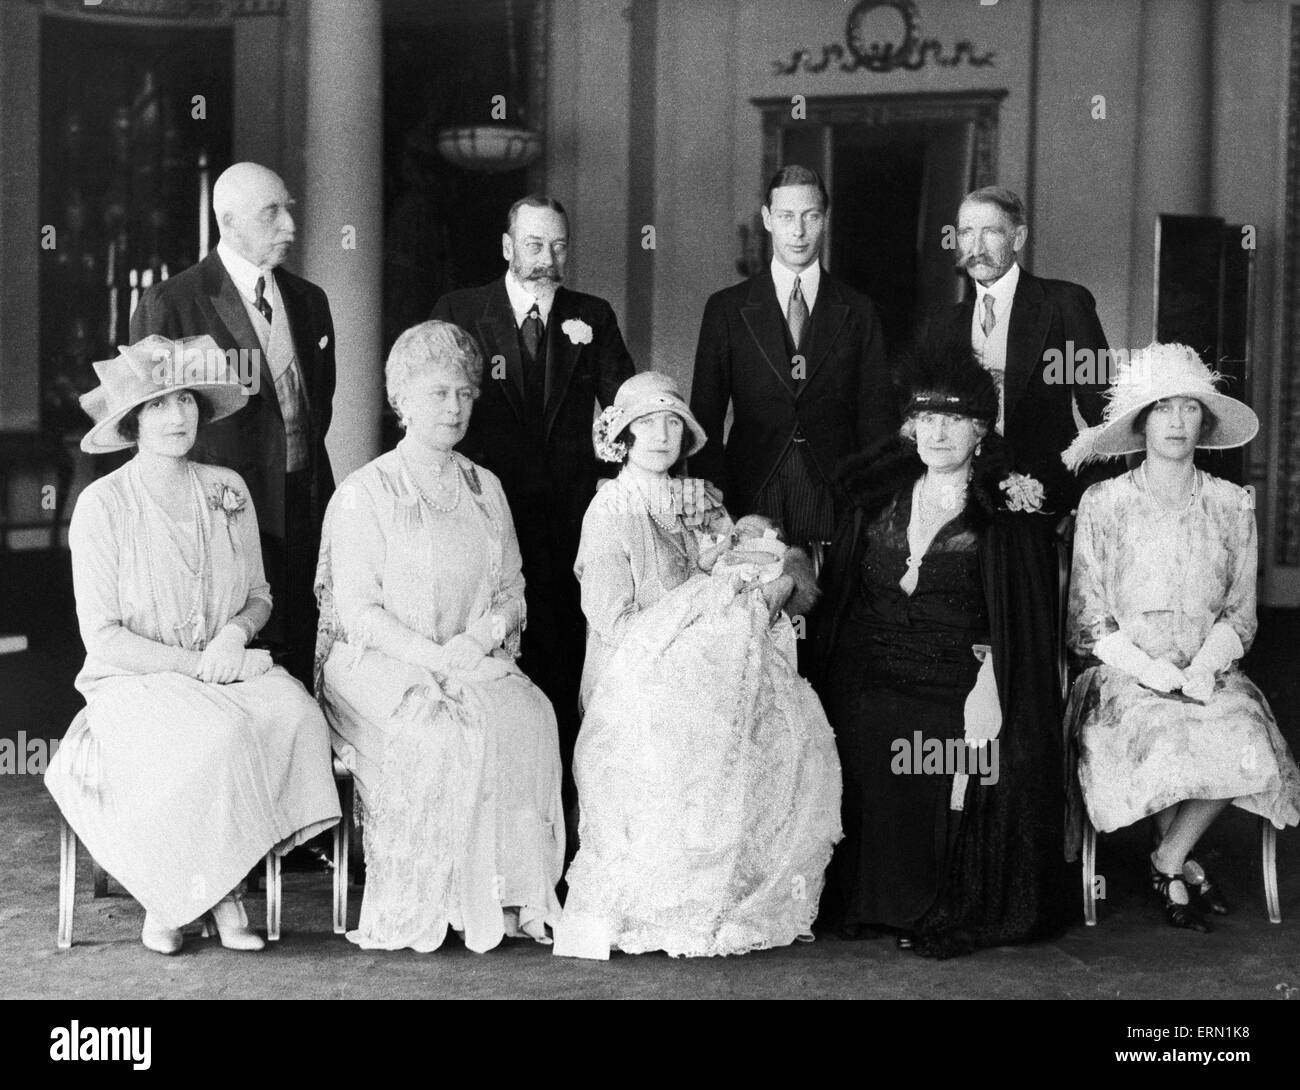 Le duc et la duchesse de York, (le futur roi George VI et La Reine Elizabeth) posent avec leur petite fille Princesse Elizabeth à sa cérémonie de baptême à Buckingham Palace entouré par les membres de la famille du Roi George V, la reine Mary, le duc de Connaught, la princesse Mary et le comte et la comtesse de Strathmore. Mai 1926. Banque D'Images